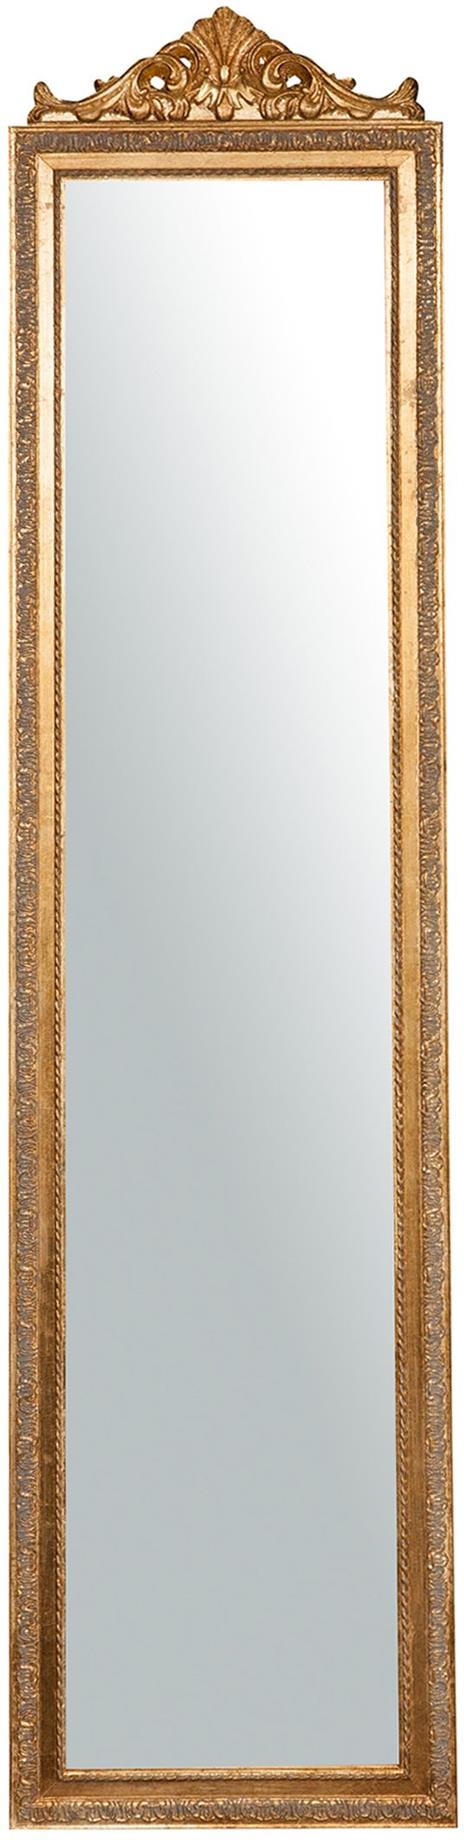 Specchio Specchiera Da Terra a Pavimento L43xPR3xH178 cm finitura oro anticato. - 2